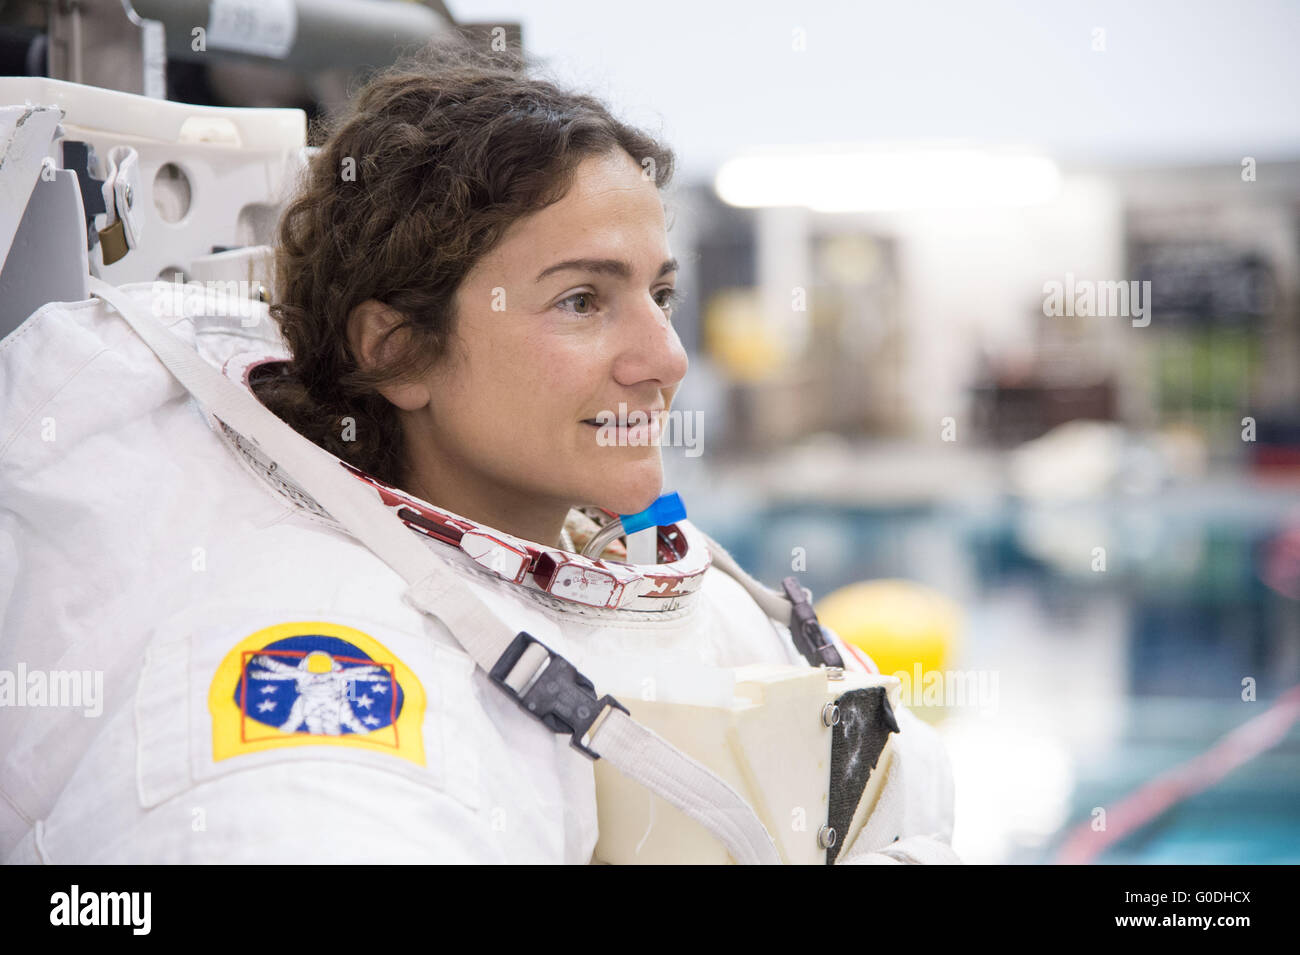 NASA-Astronaut Jessica Meir in ihrer Extravehicular Mobility Unit Raumanzug in ISS EVA Ausbildung bei neutralen Auftrieb Labor Johnson Space Center 27. Oktober 2014 in Houston, Texas. Stockfoto